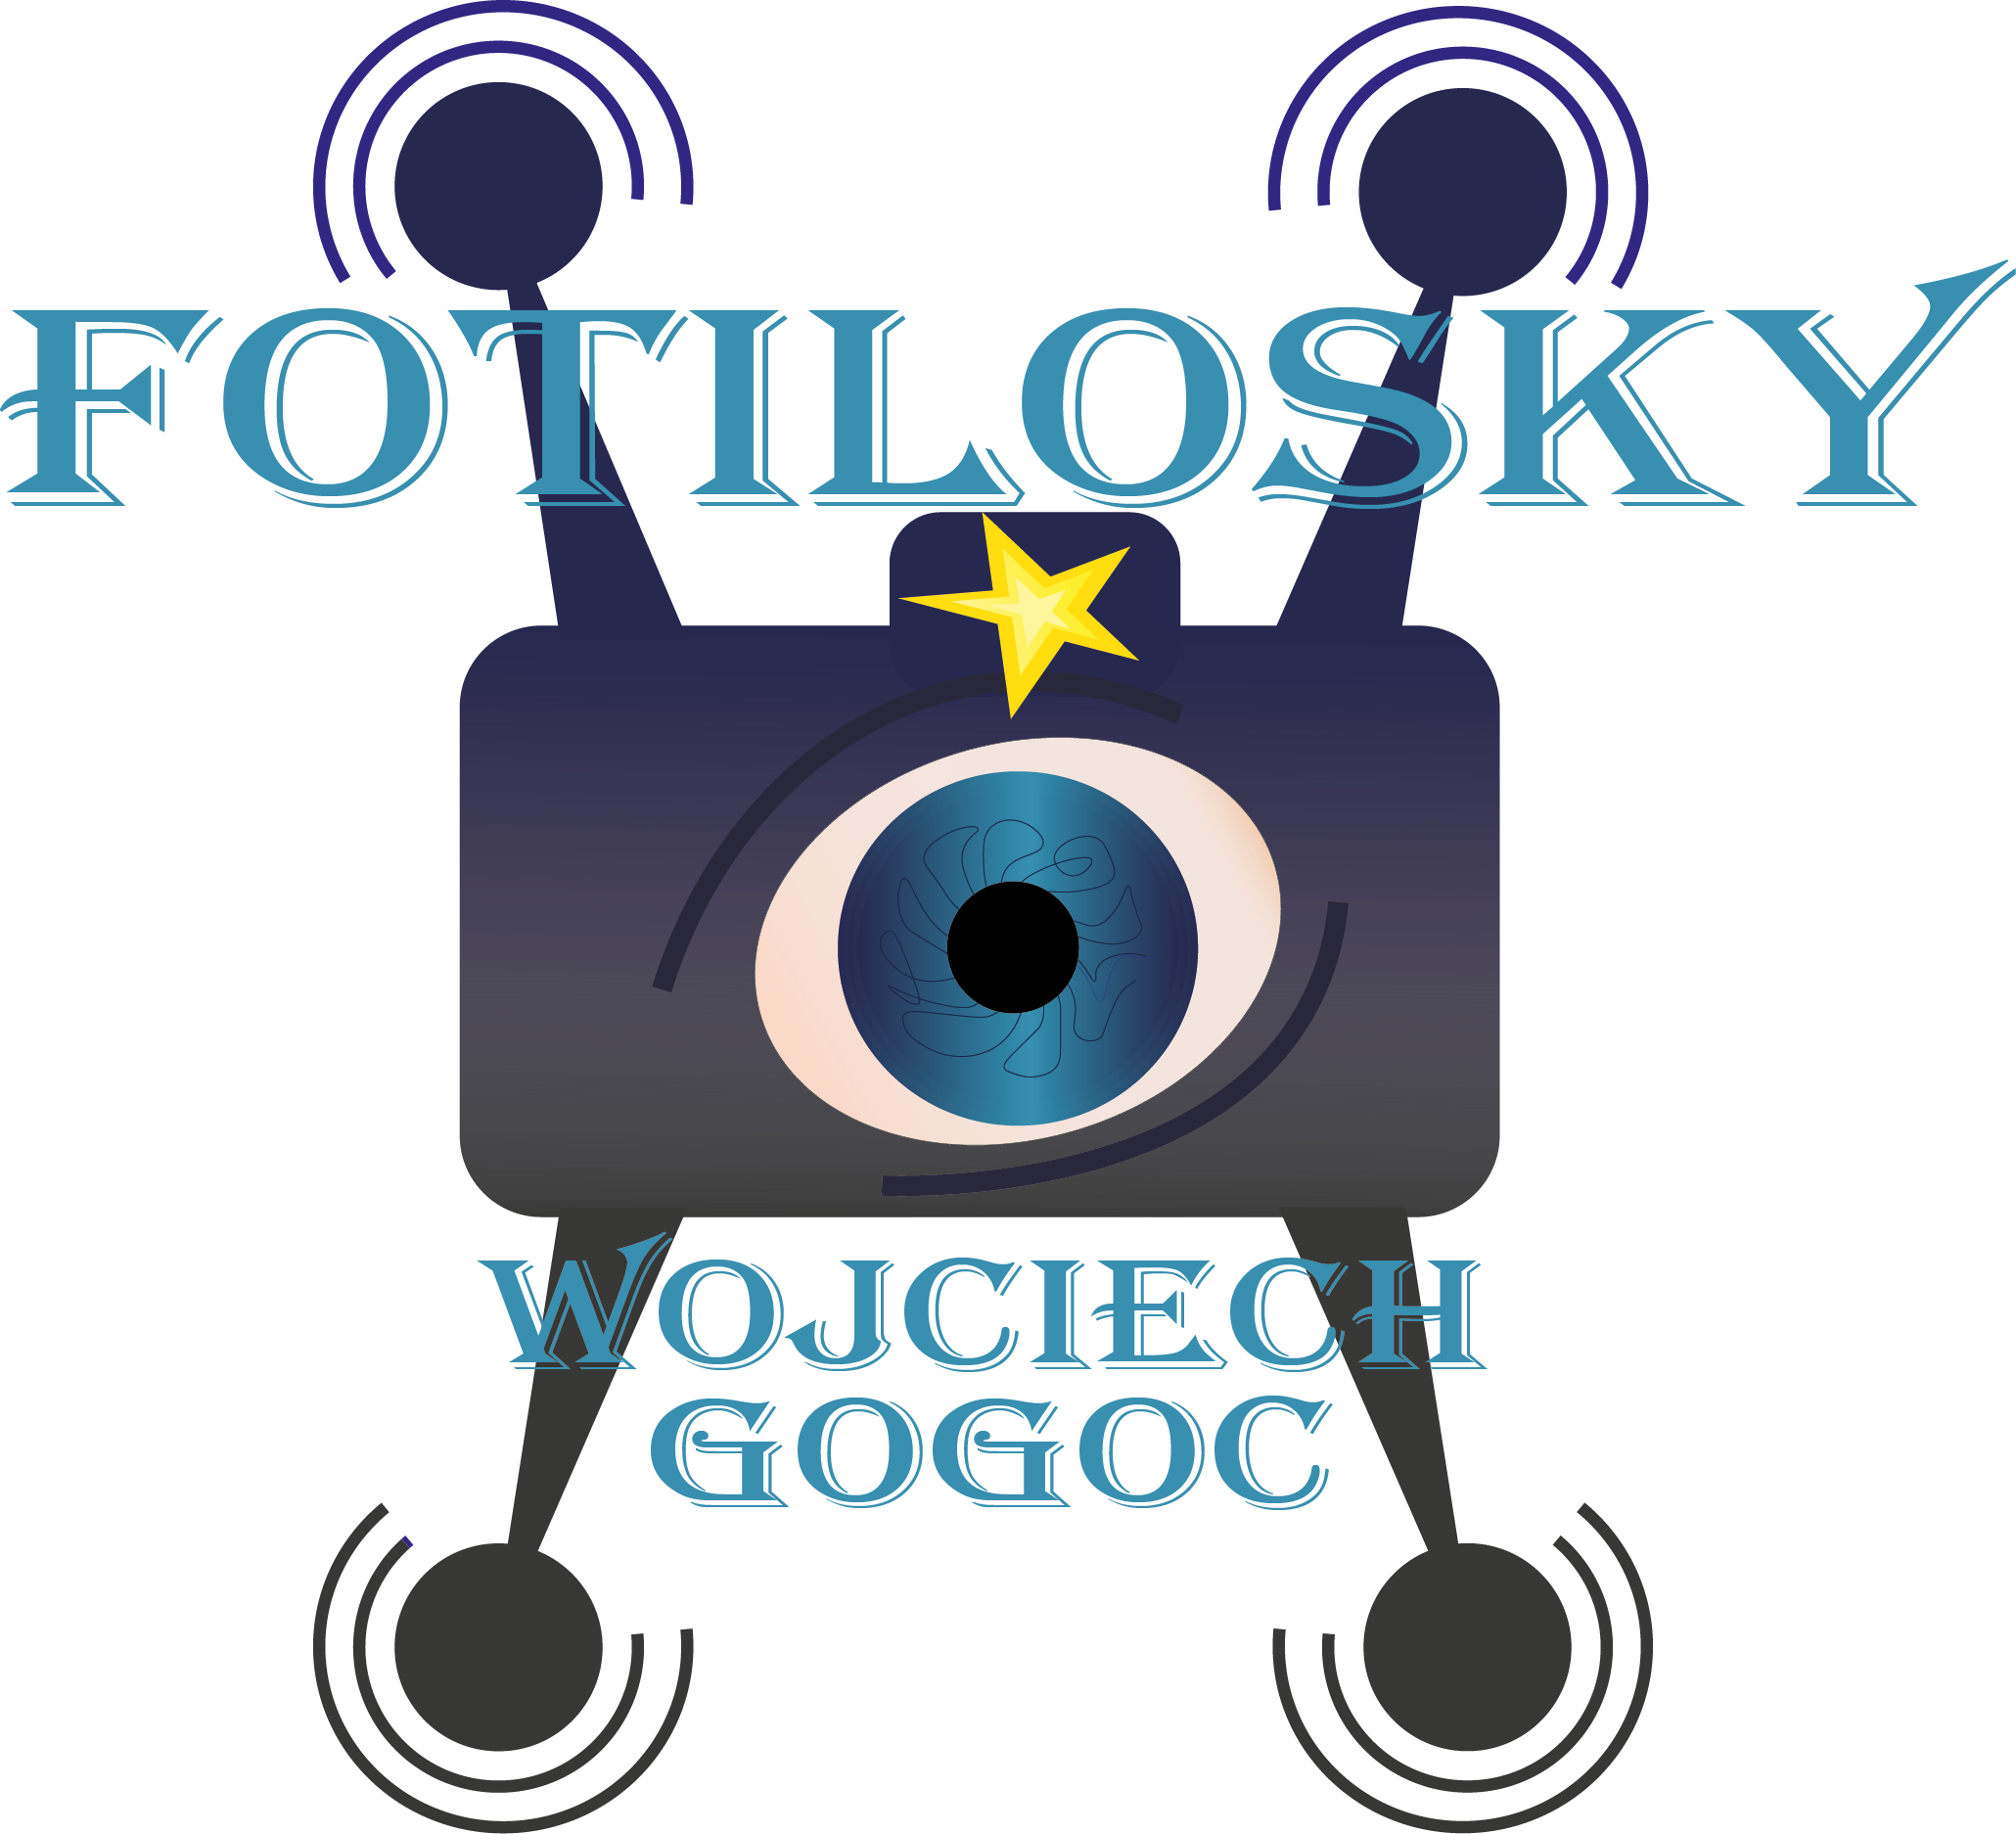 logo Fotilosky Wojciech Gogoc